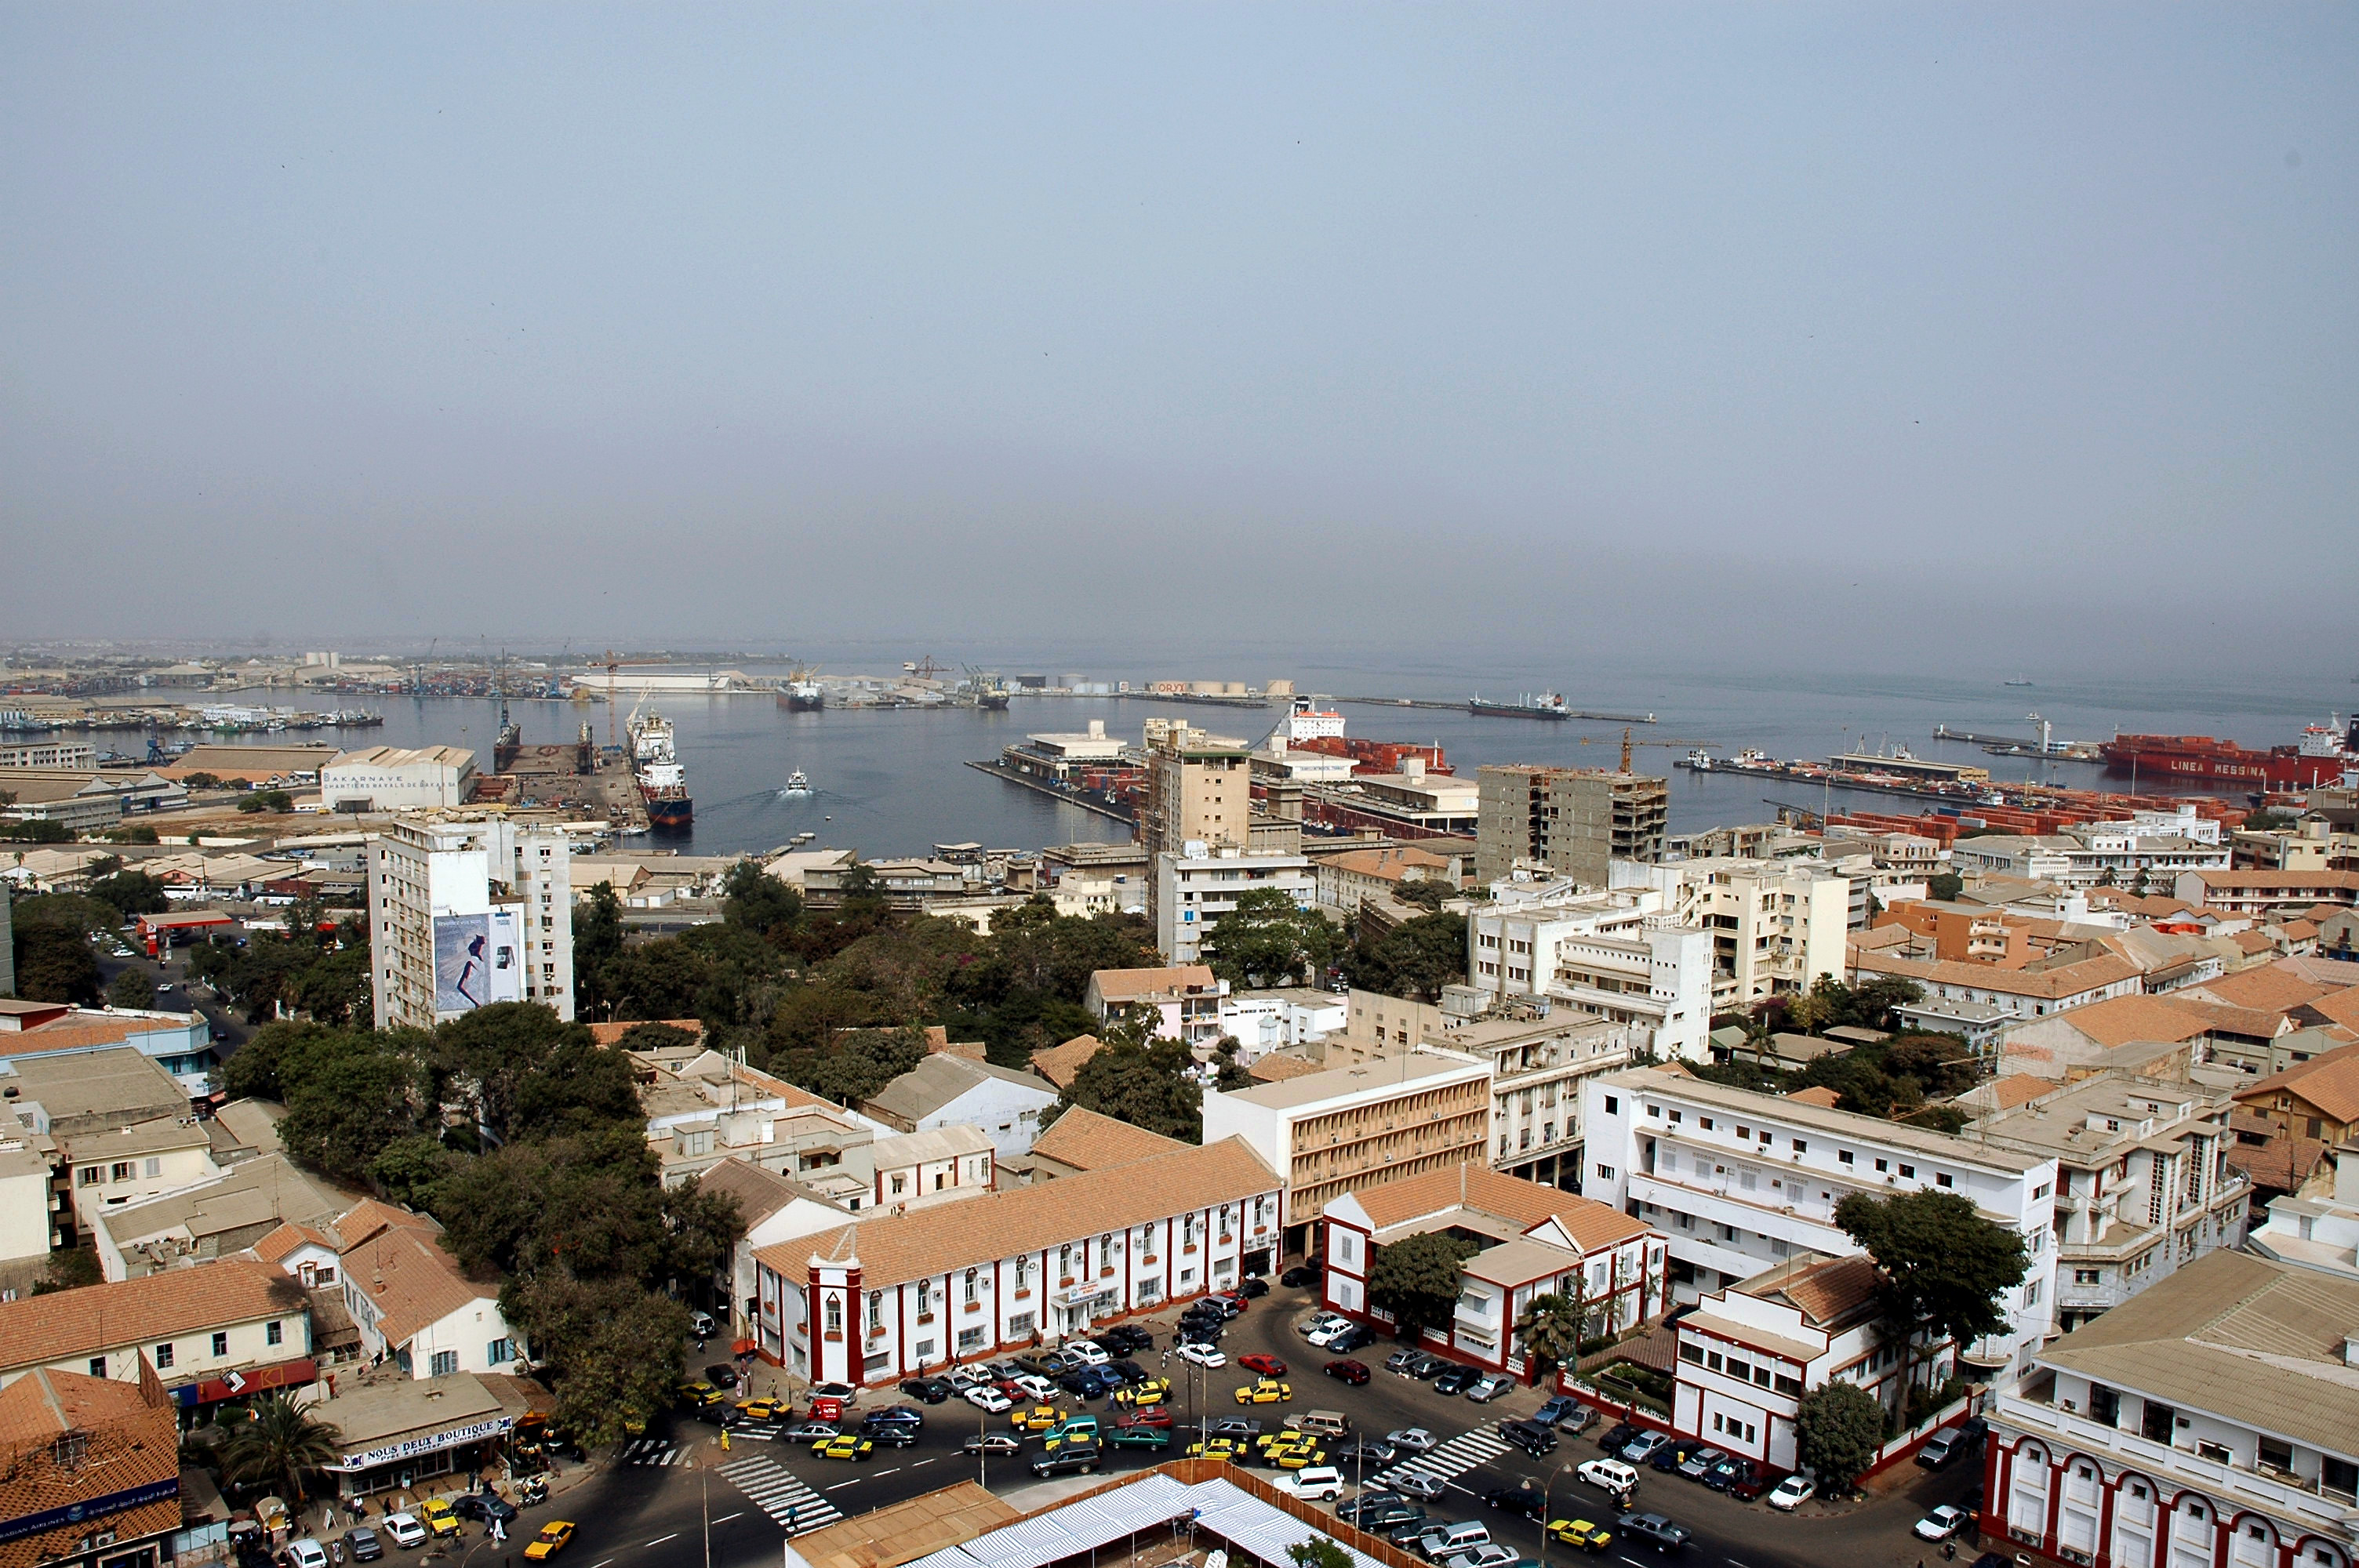 The port of Dakar, Senegal